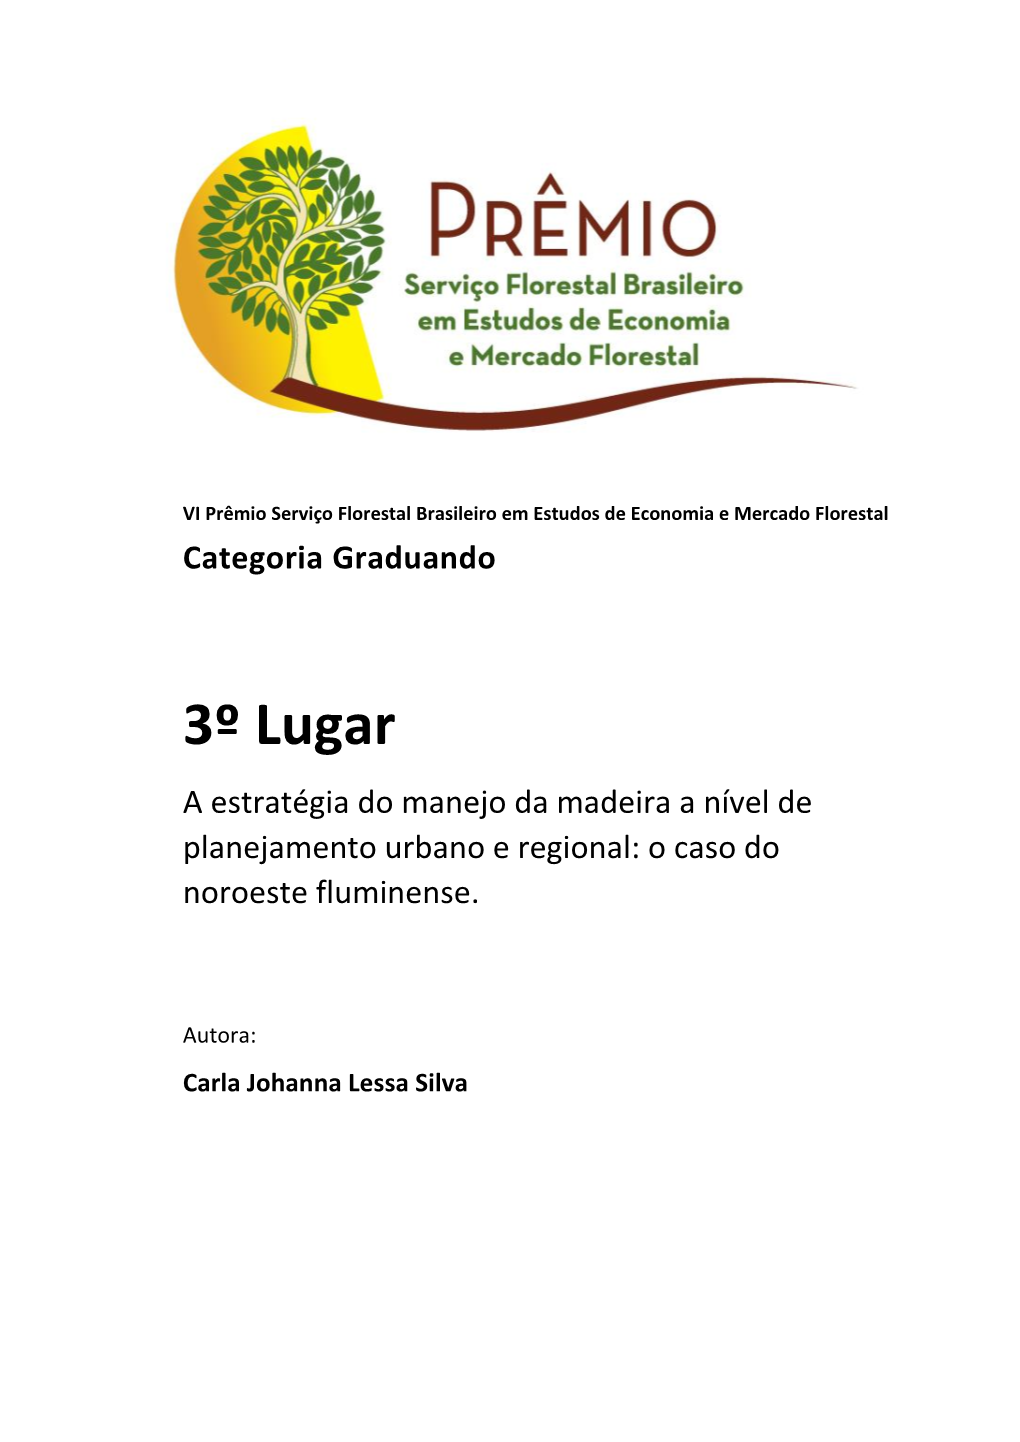 3º Lugar a Estratégia Do Manejo Da Madeira a Nível De Planejamento Urbano E Regional: O Caso Do Noroeste Fluminense